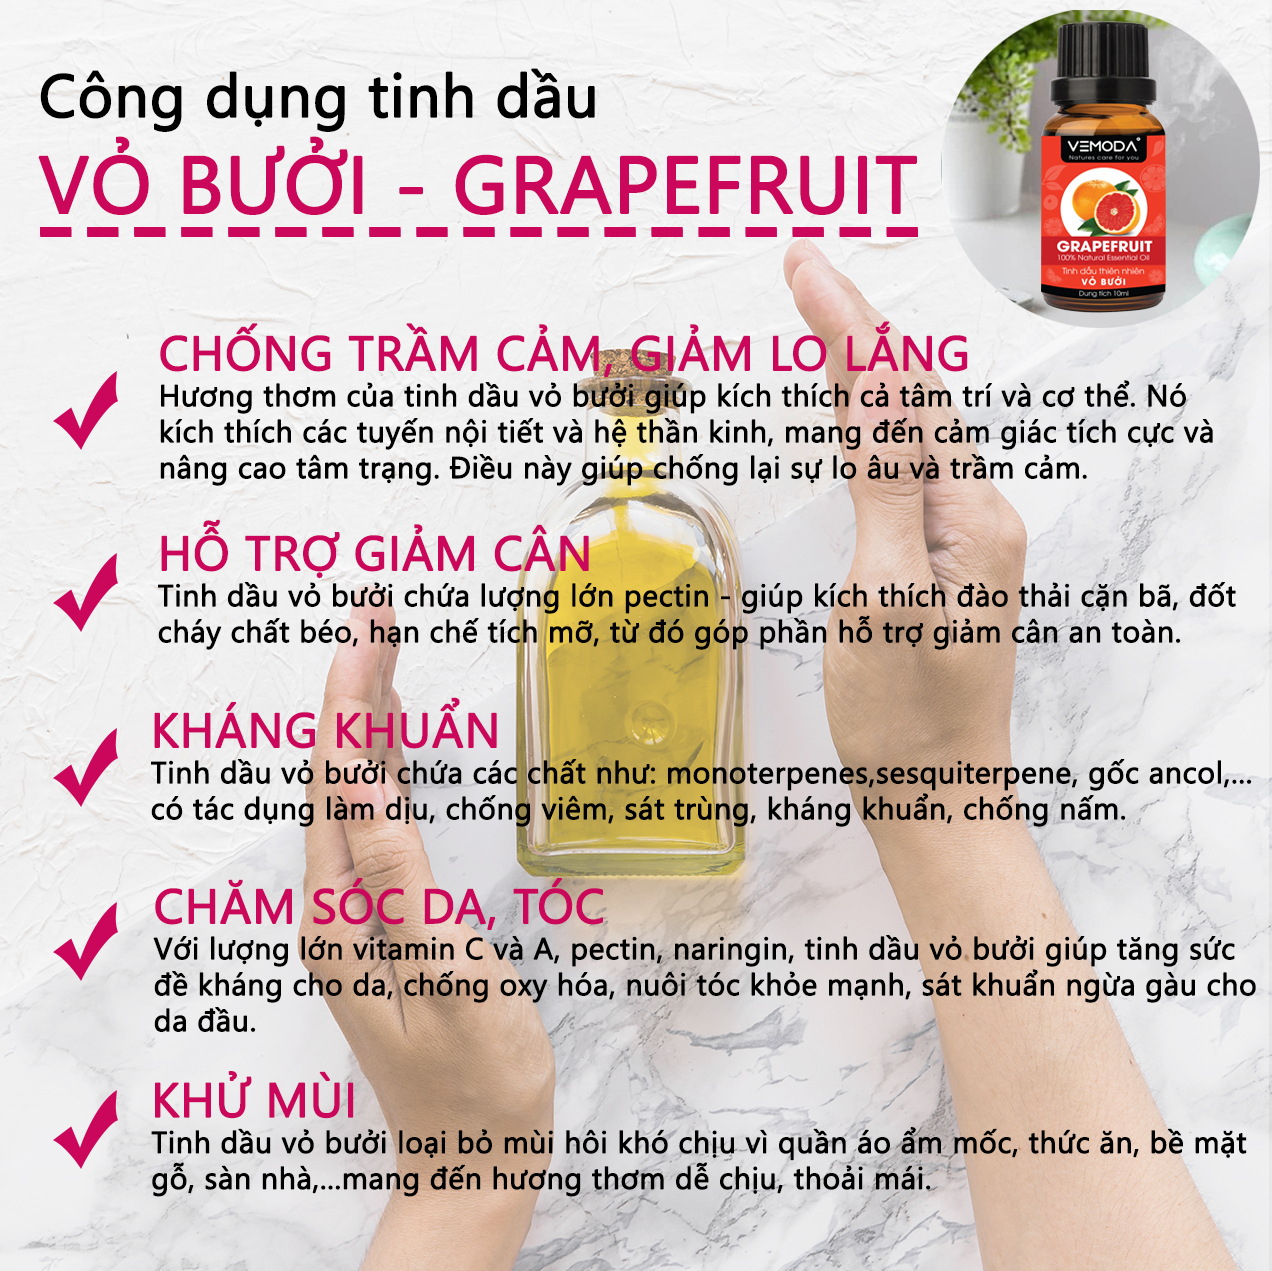 Tinh dầu Vỏ bưởi HG. Grapefruit Essential Oil 10ML. Tinh dầu xông phòng giúp kháng khuẩn, thanh lọc không khí, thư giãn, hỗ trợ giảm cân, chăm sóc da tóc. Tinh dầu thơm phòng cao cấp Vemoda